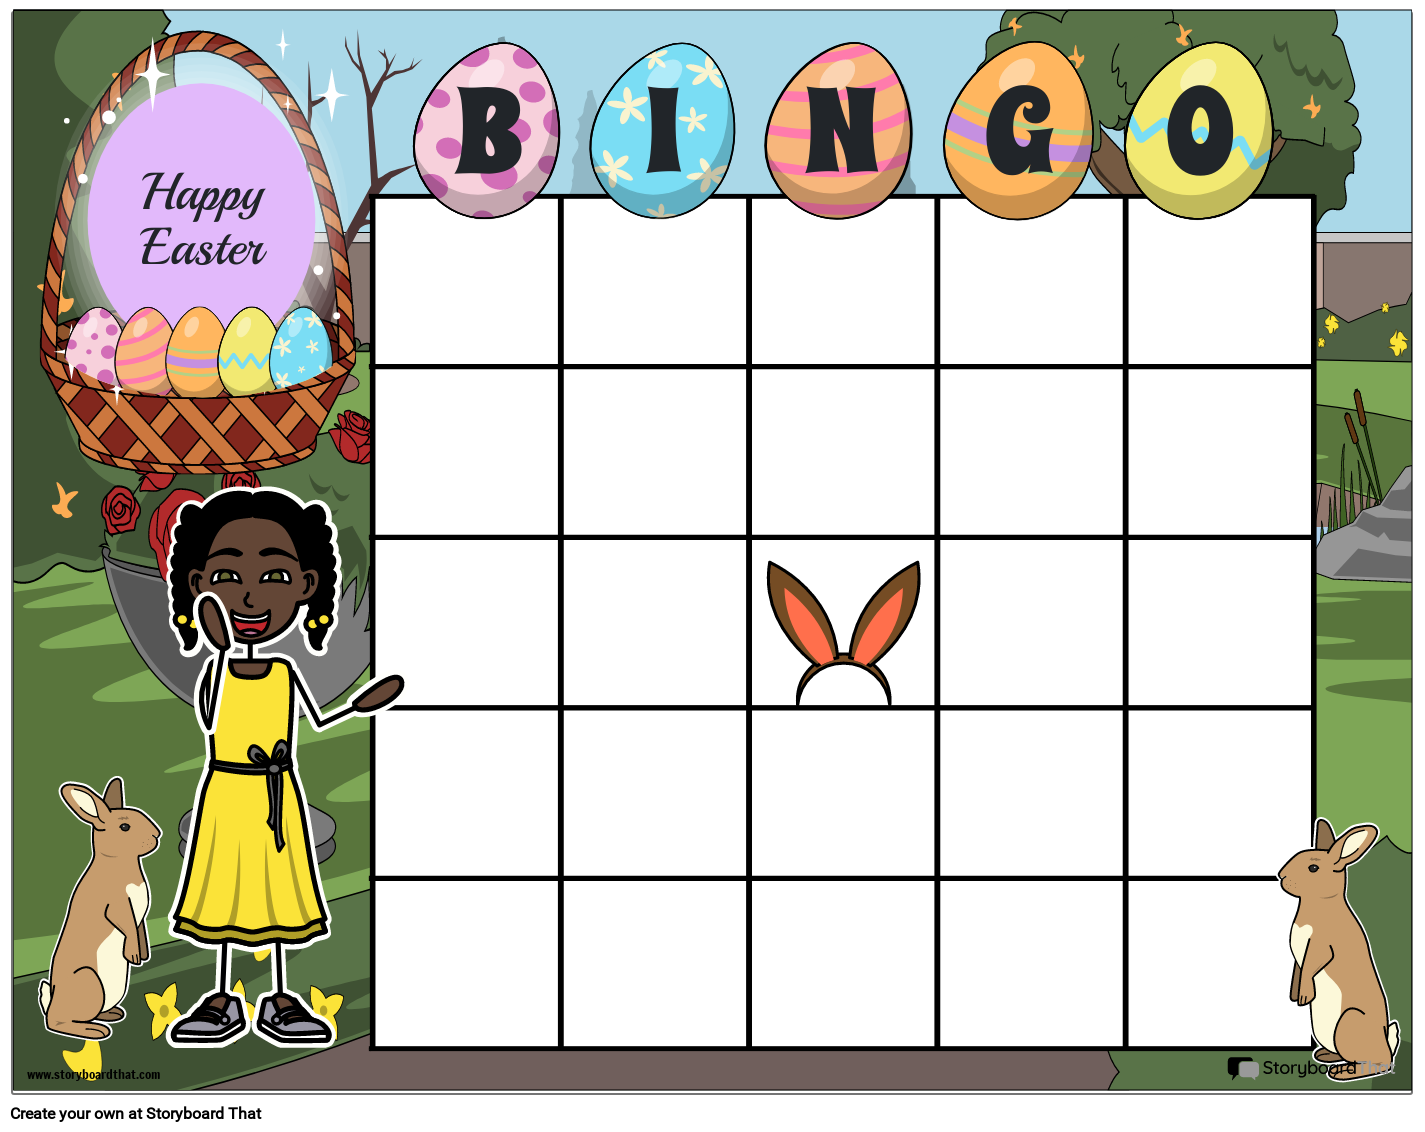 Fun Easter-Themed Bingo Card Template